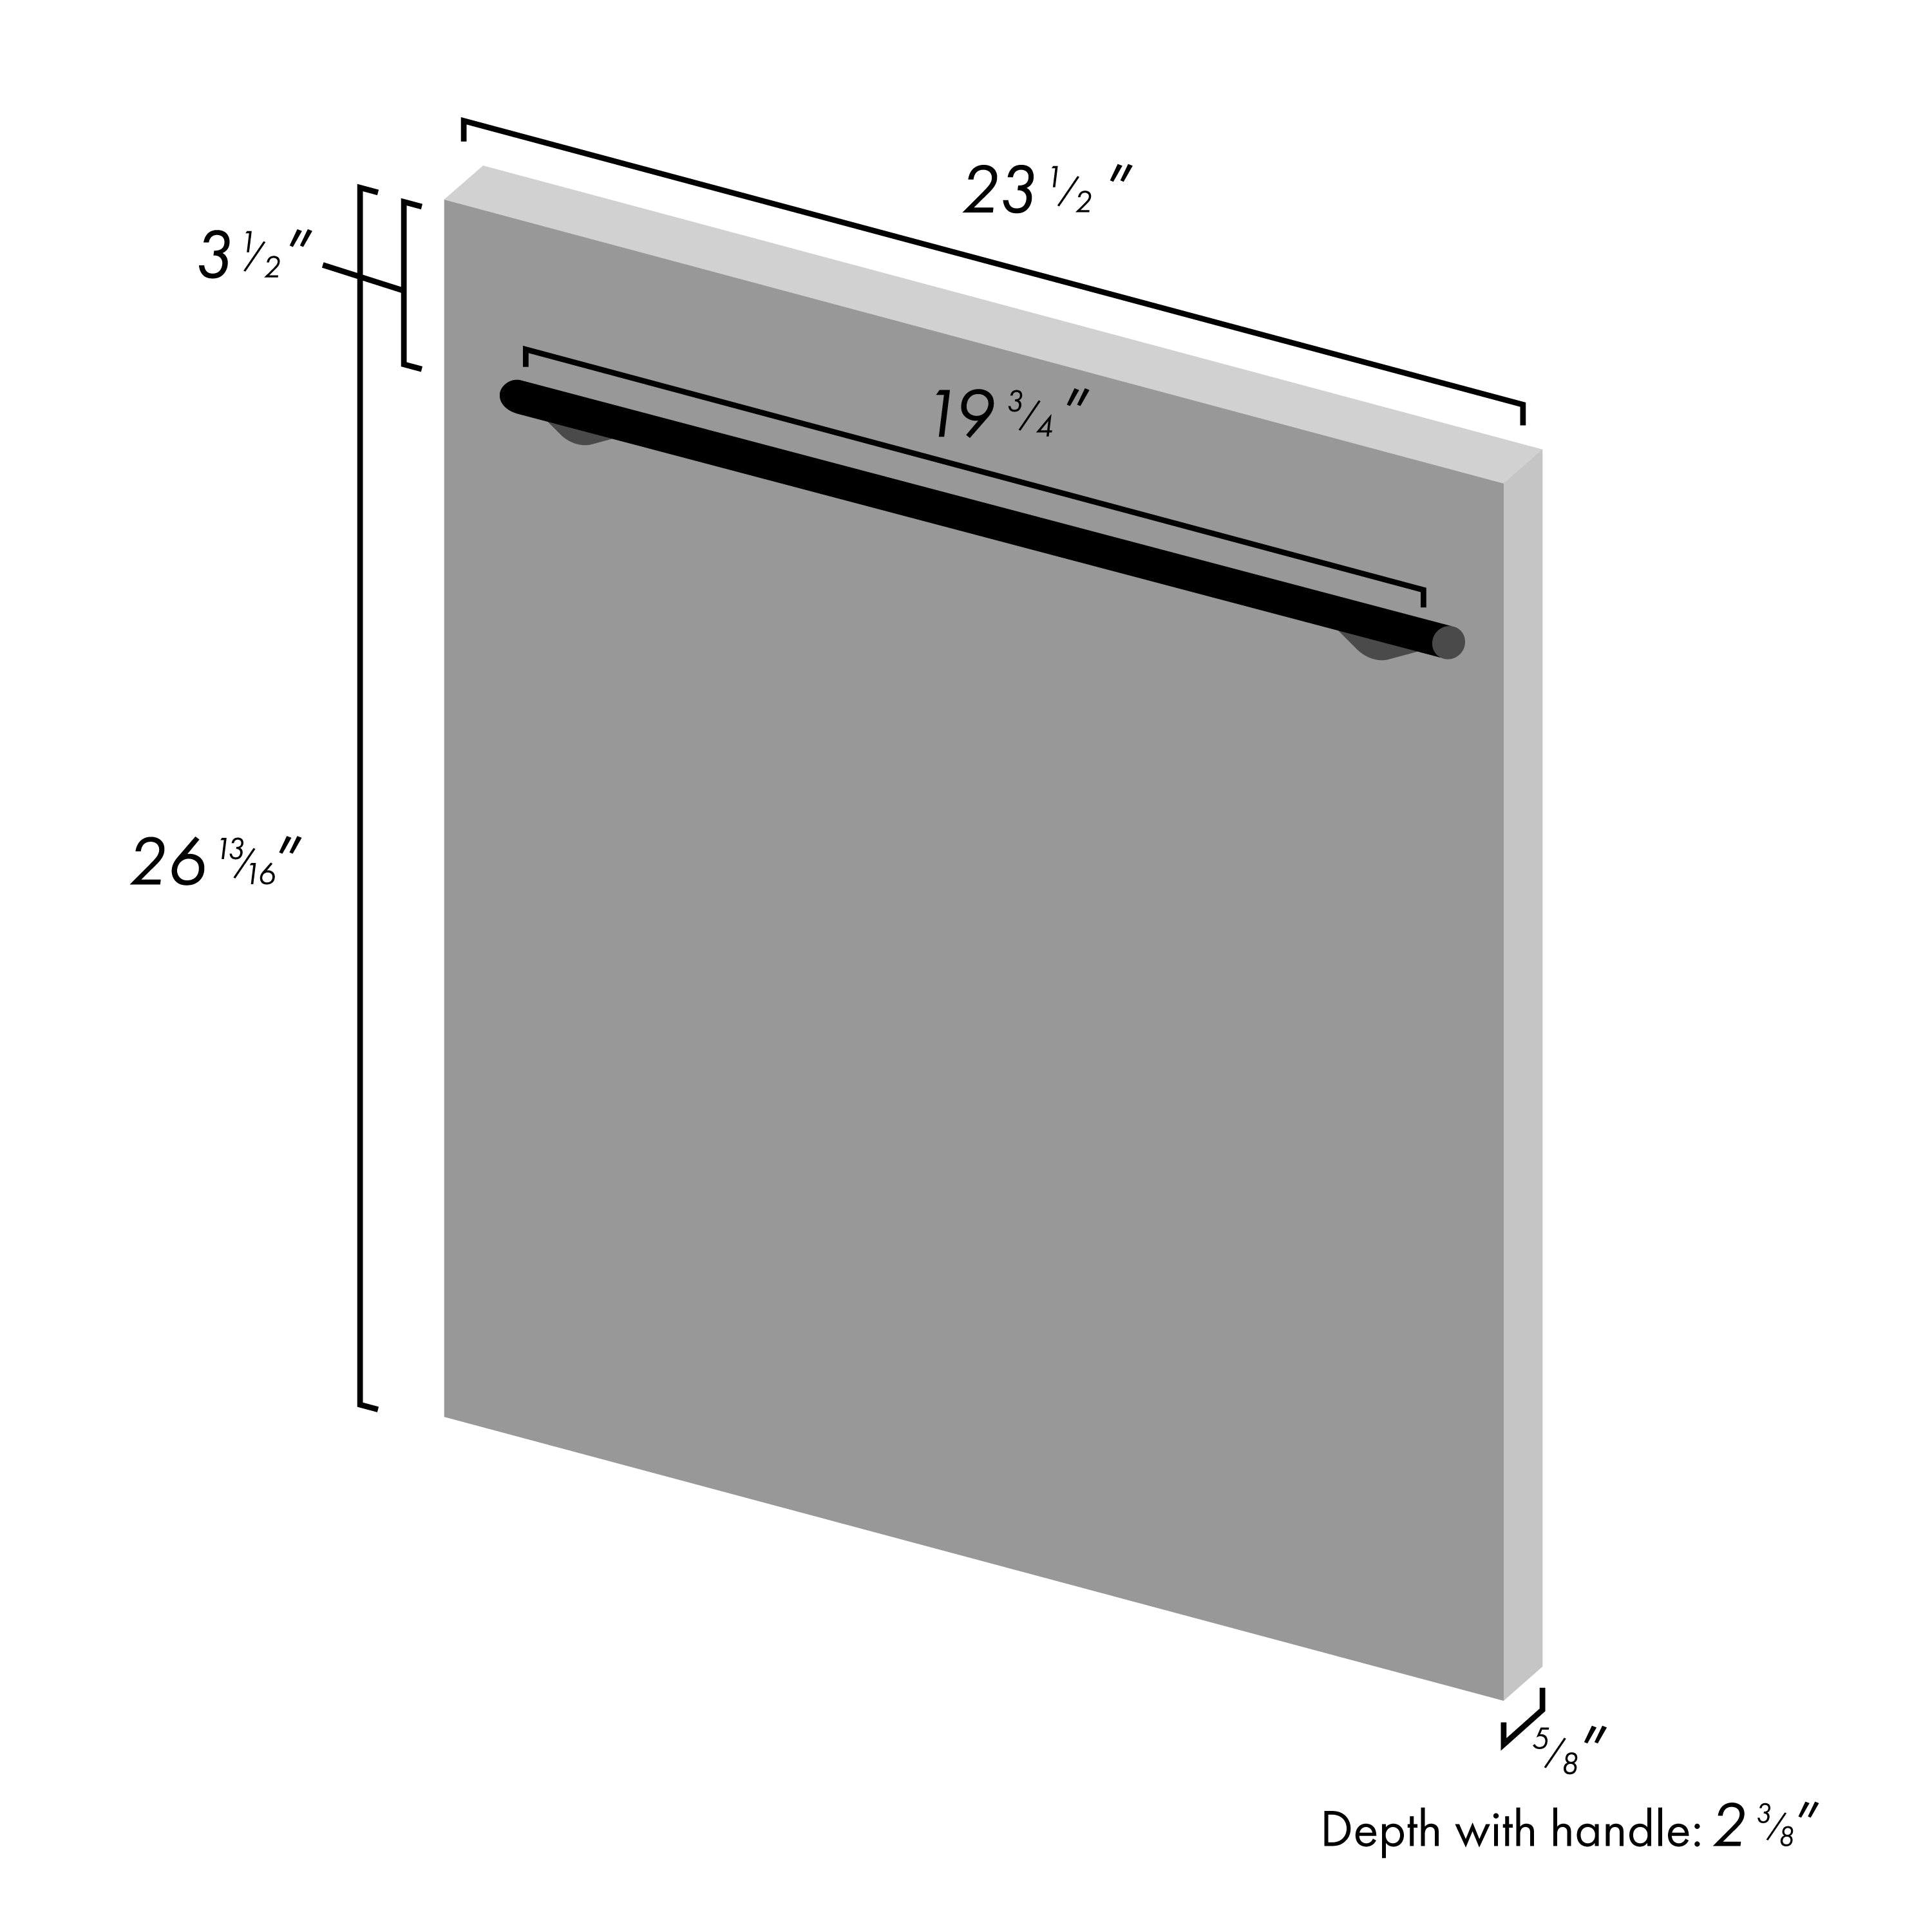 ZLINE 24" Dishwasher Panel in Fingerprint Resistant Finish with Modern Handle (DP-SN-24)